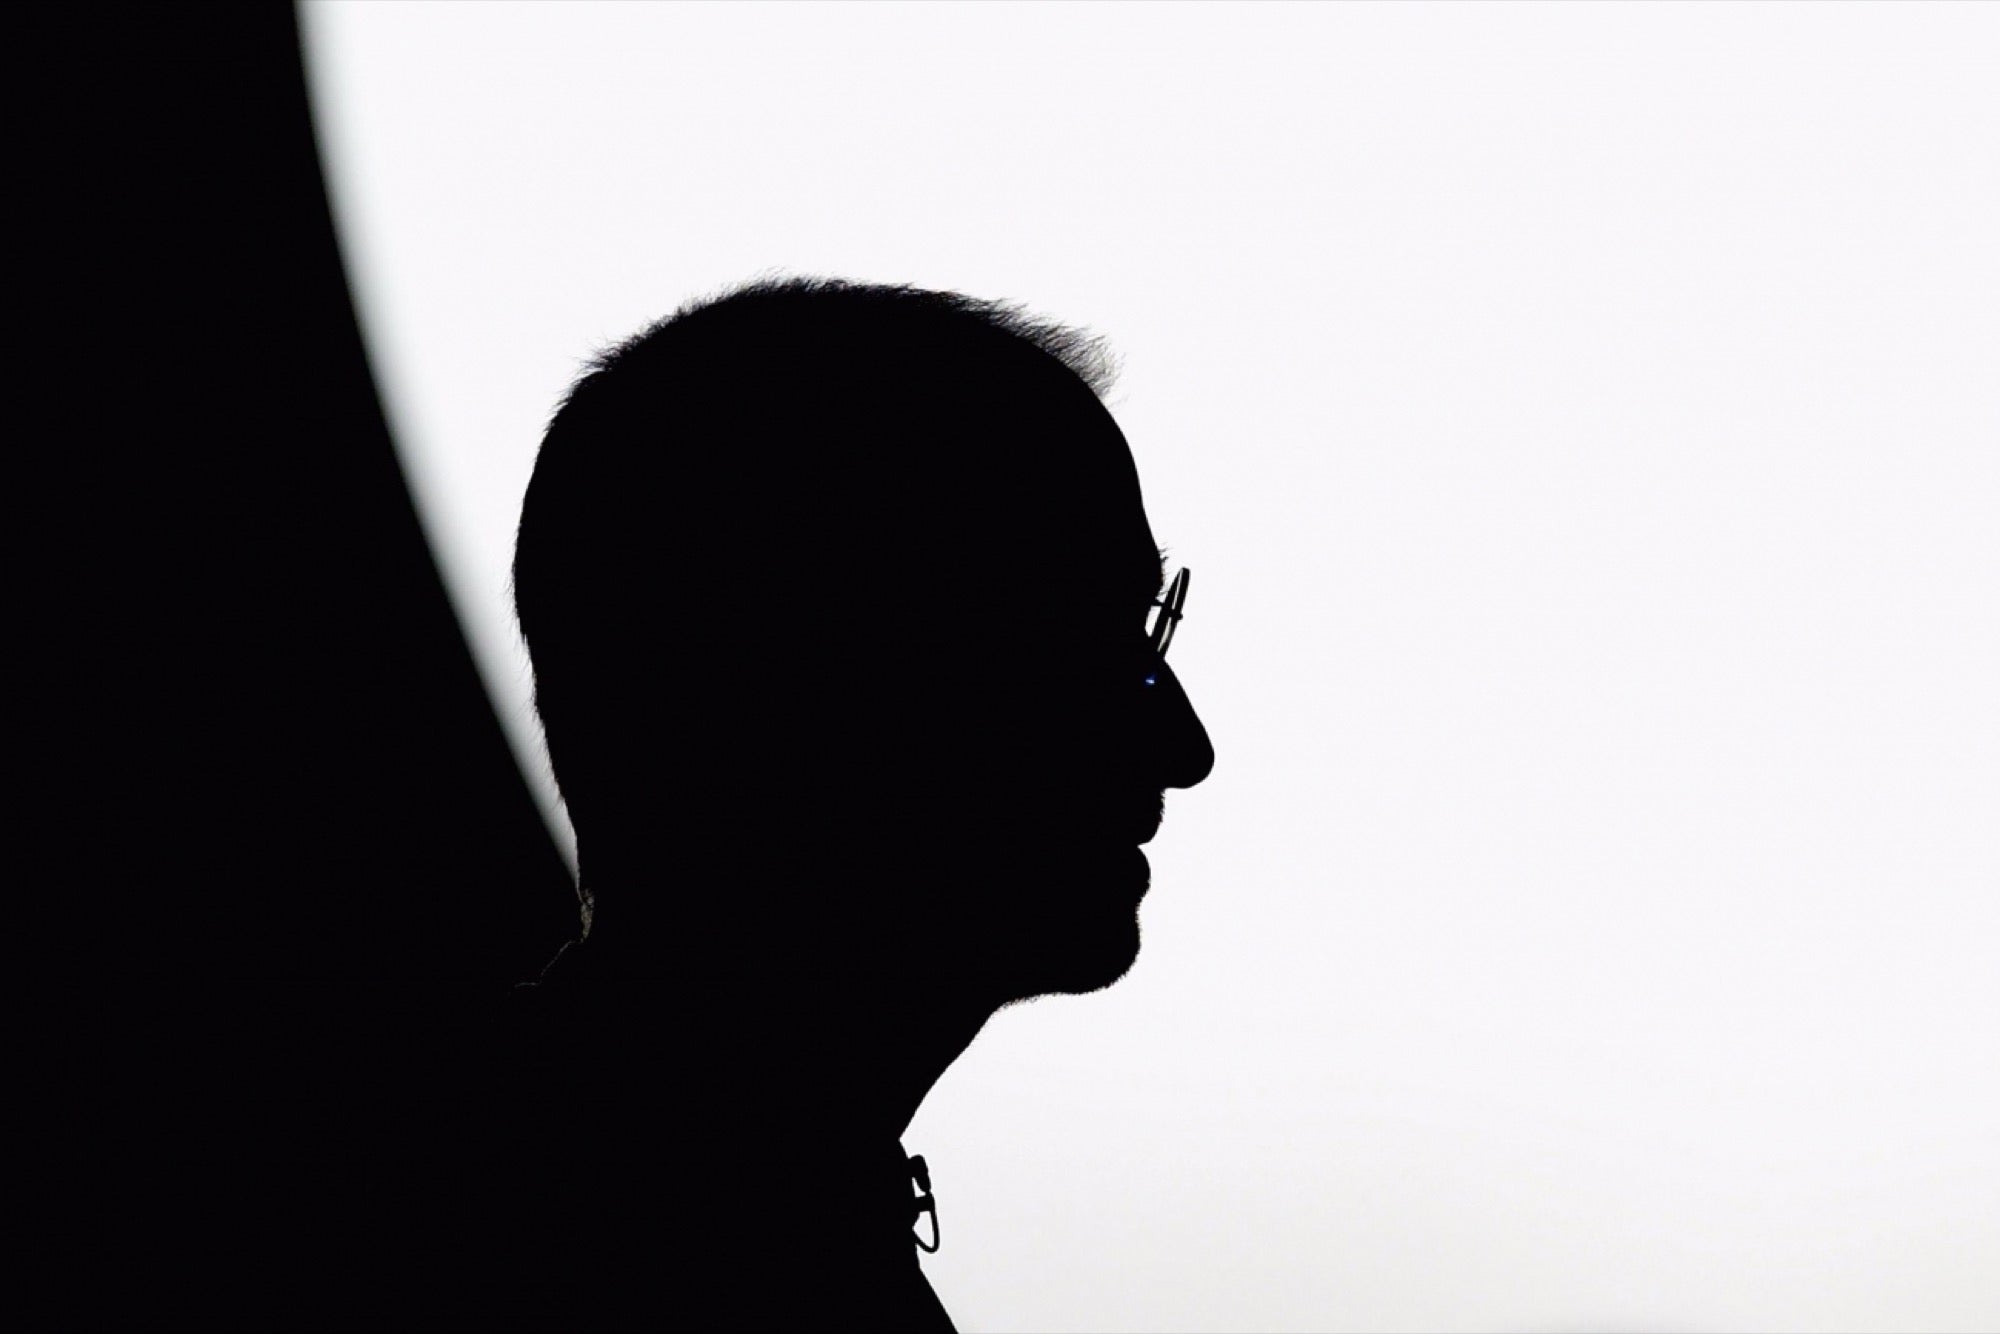 史蒂夫·乔布斯 (Steve Jobs) 2005年6月斯坦福大学毕业典礼演讲 (文字记录)